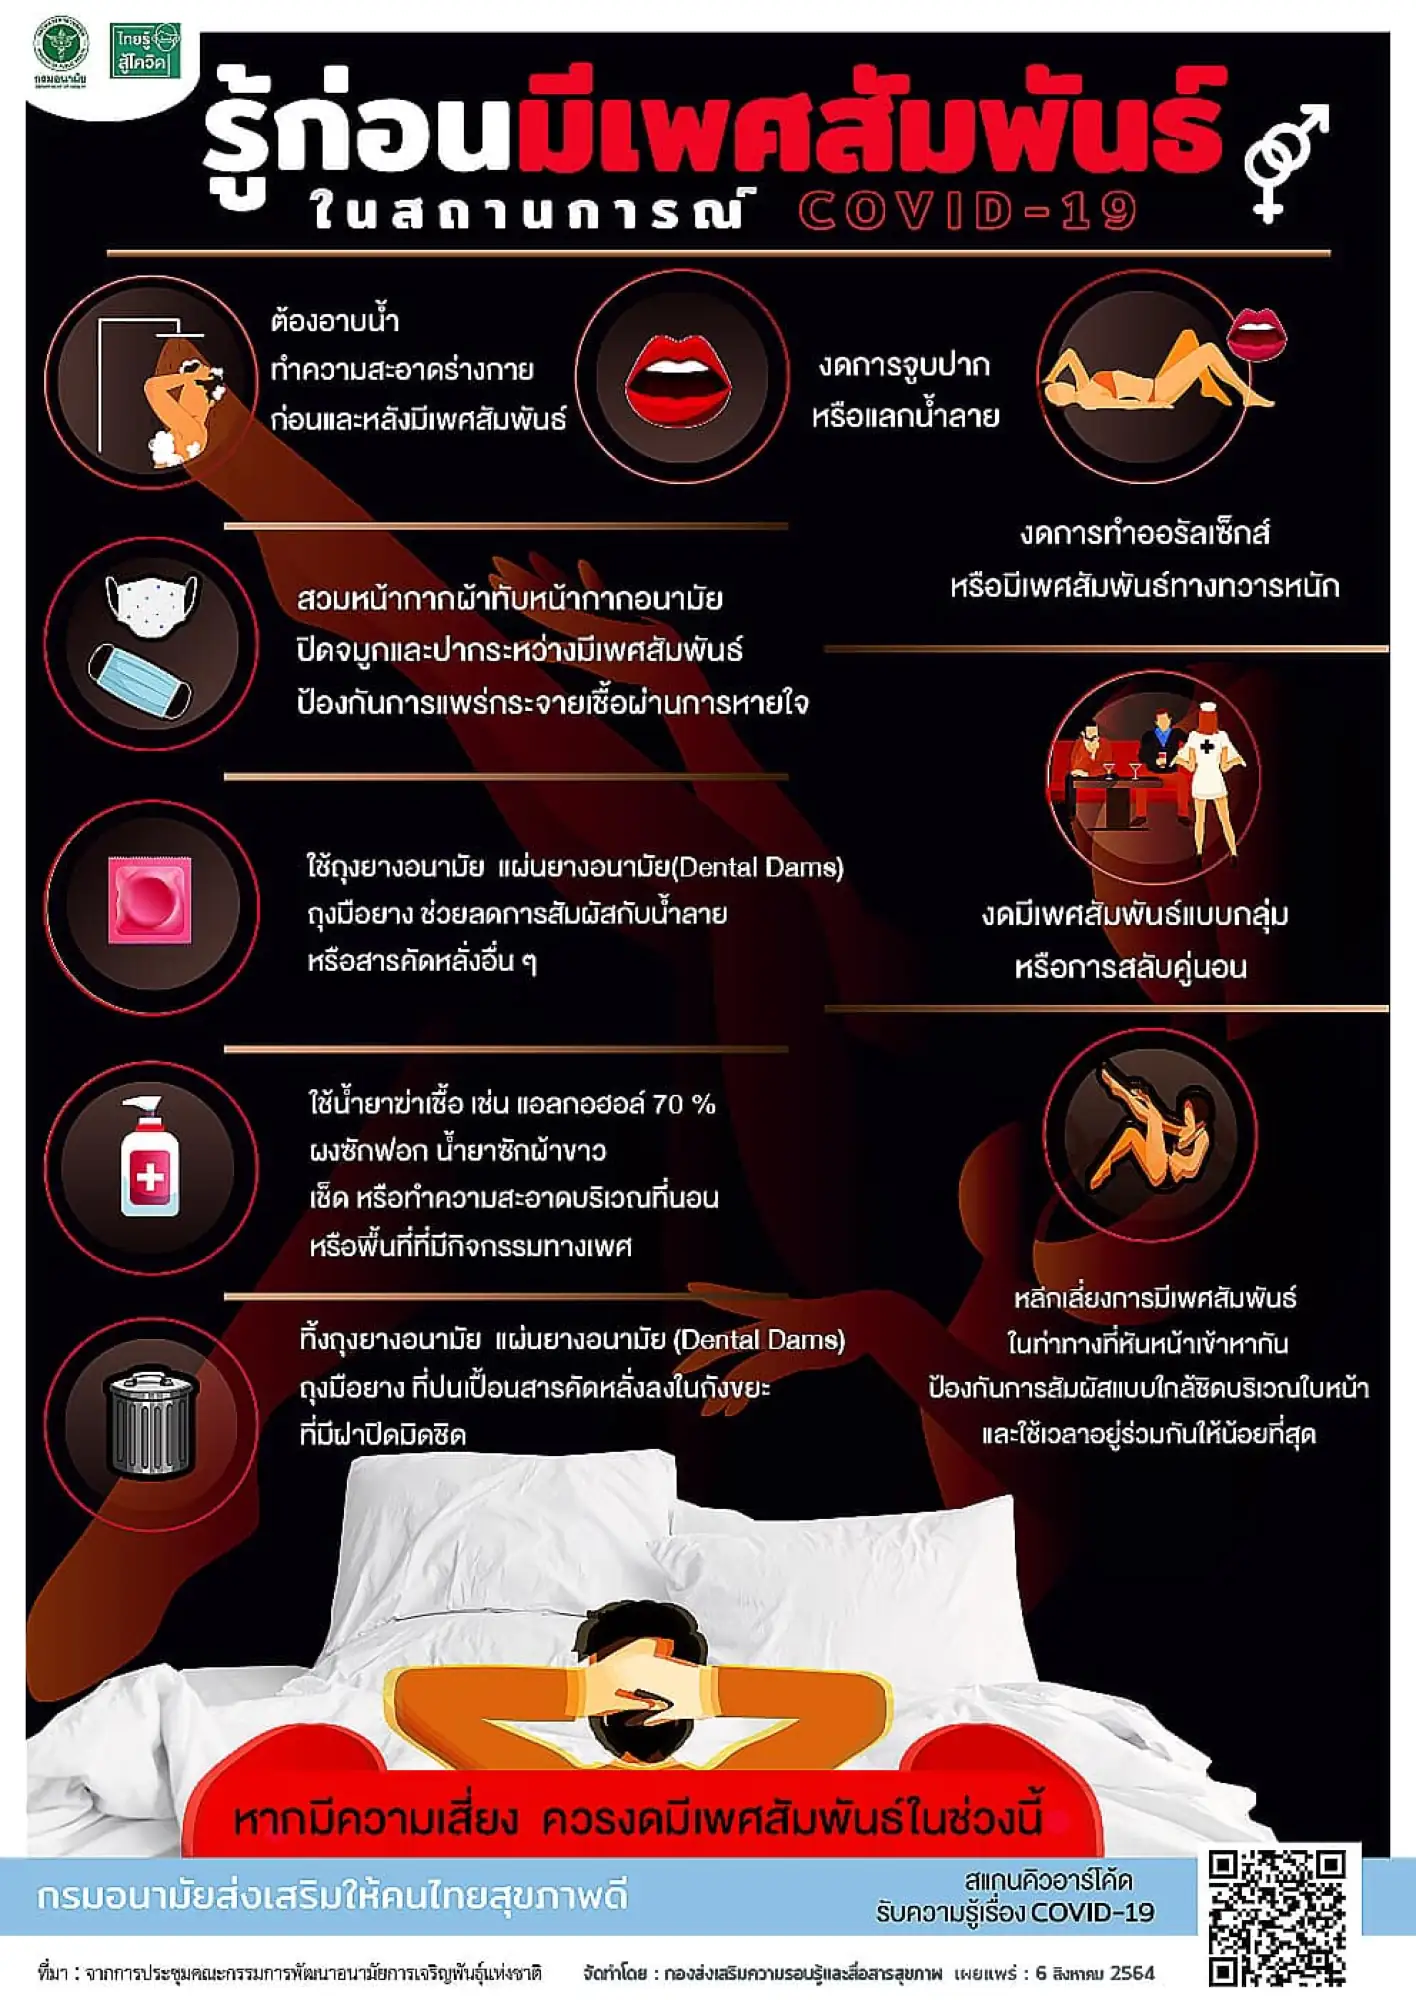 为防止泰国新冠肺炎(COVID-19)疫情继续恶化，泰国卫生部公布「疫情期间性行为9大注意事项」提醒（图片来源：脸书@กรมอนามัย）